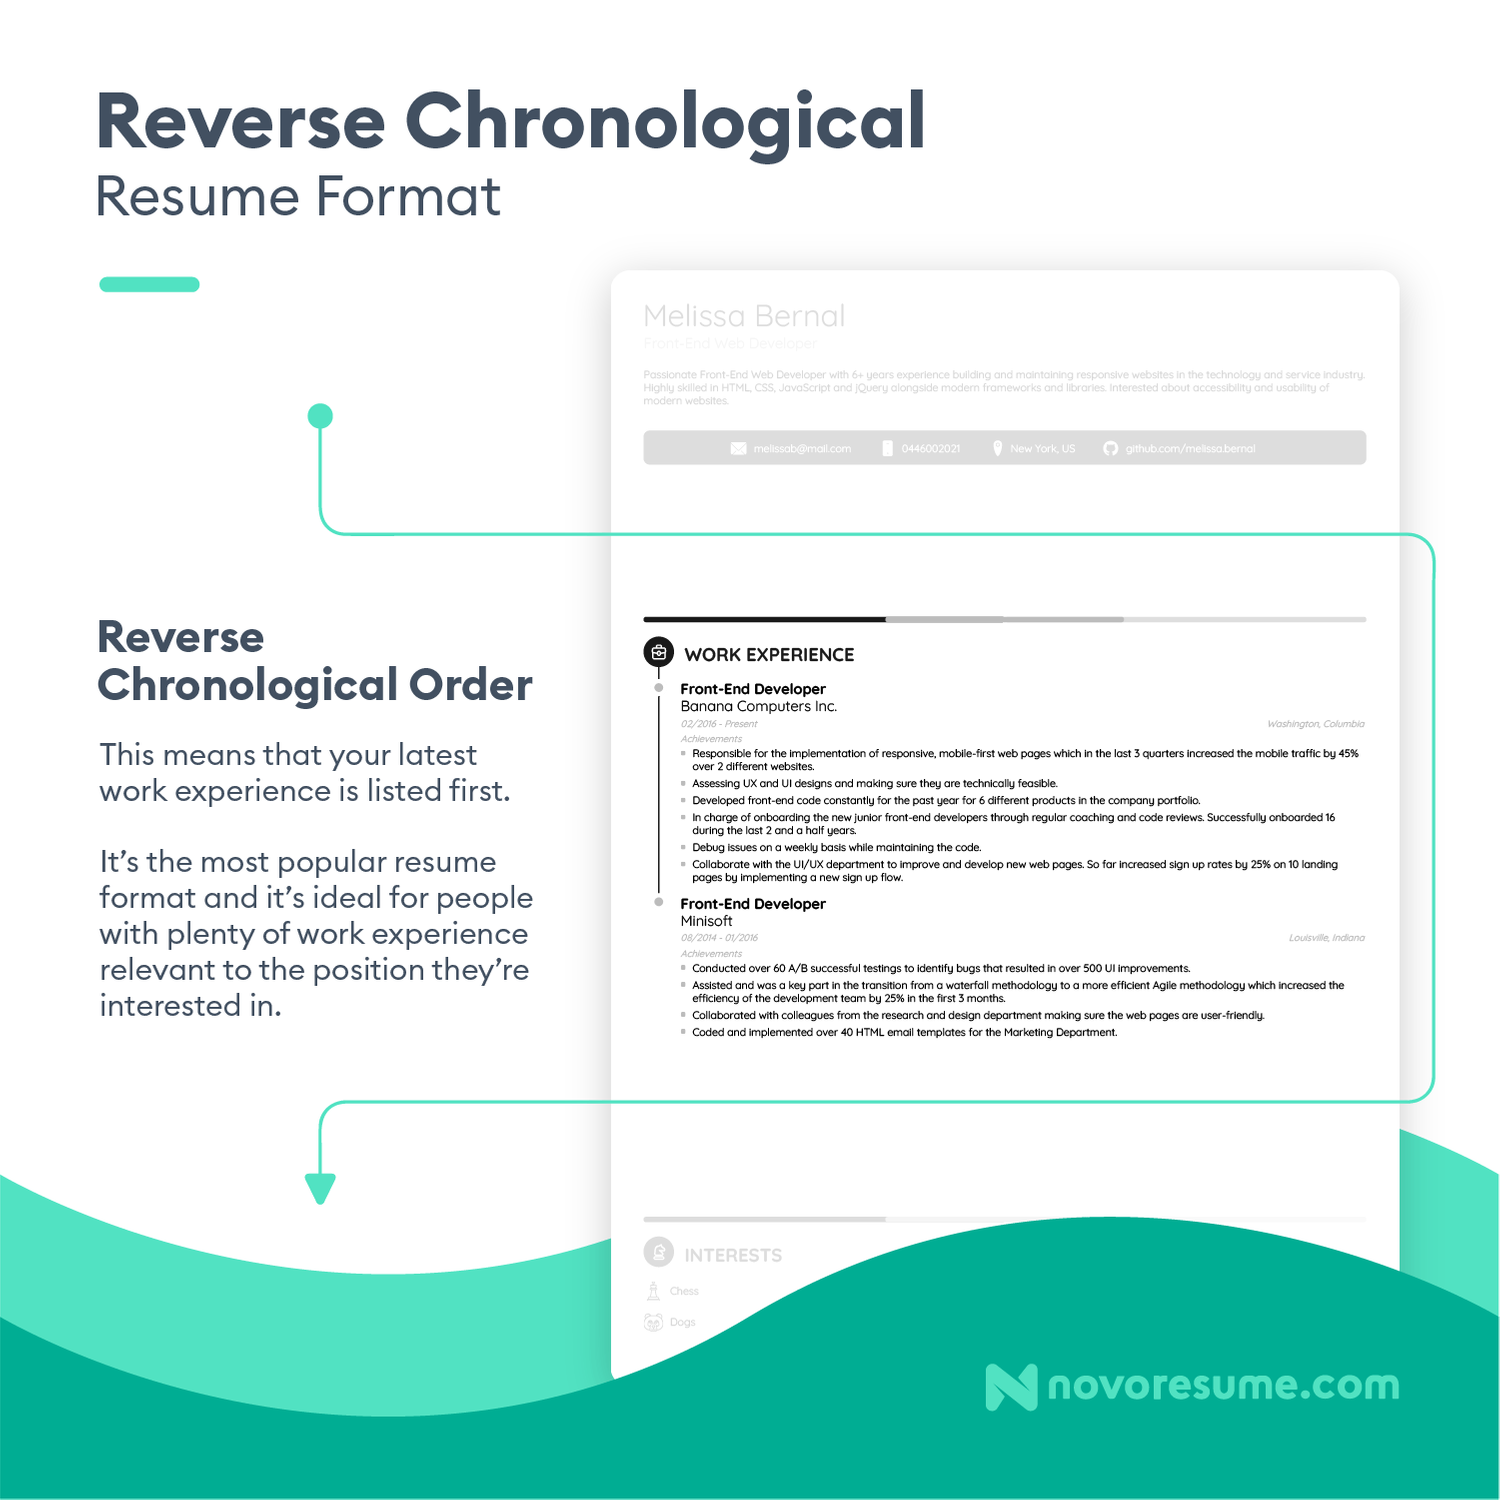 reverse chronlogical resume